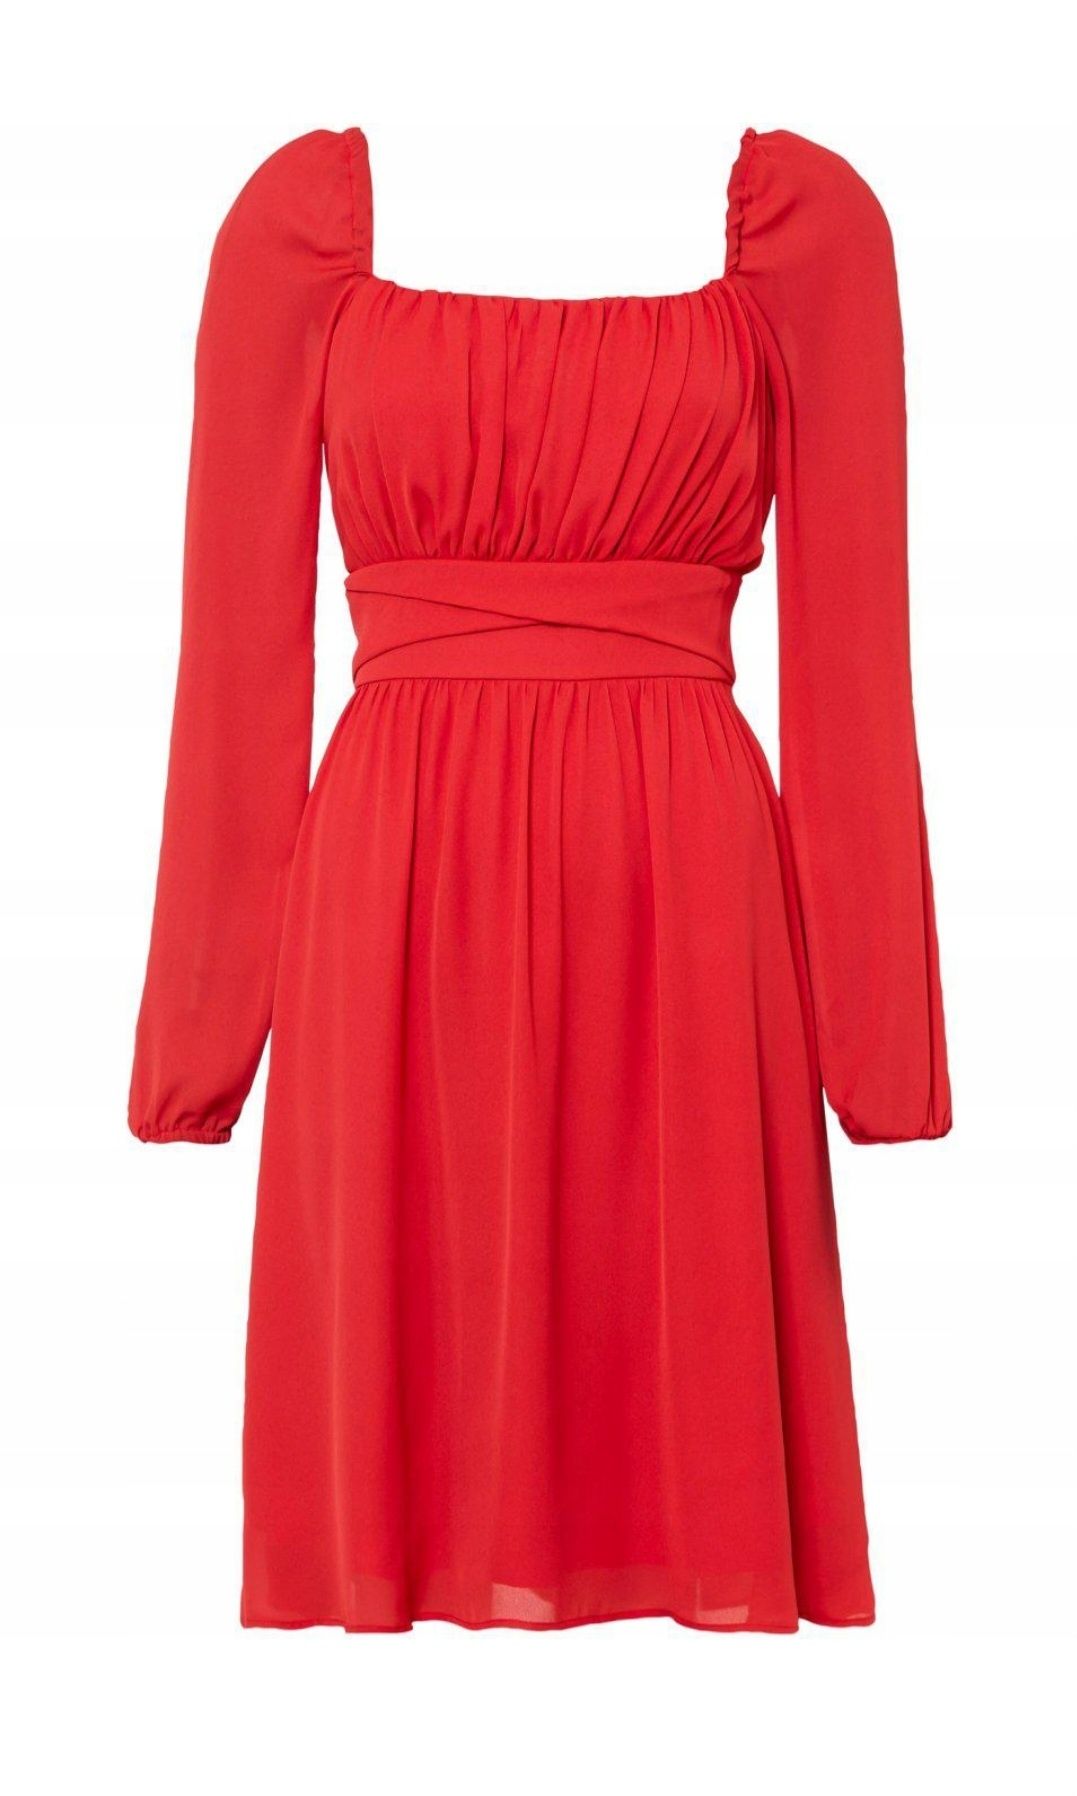 Nowa sukienka czerwona carmen 46